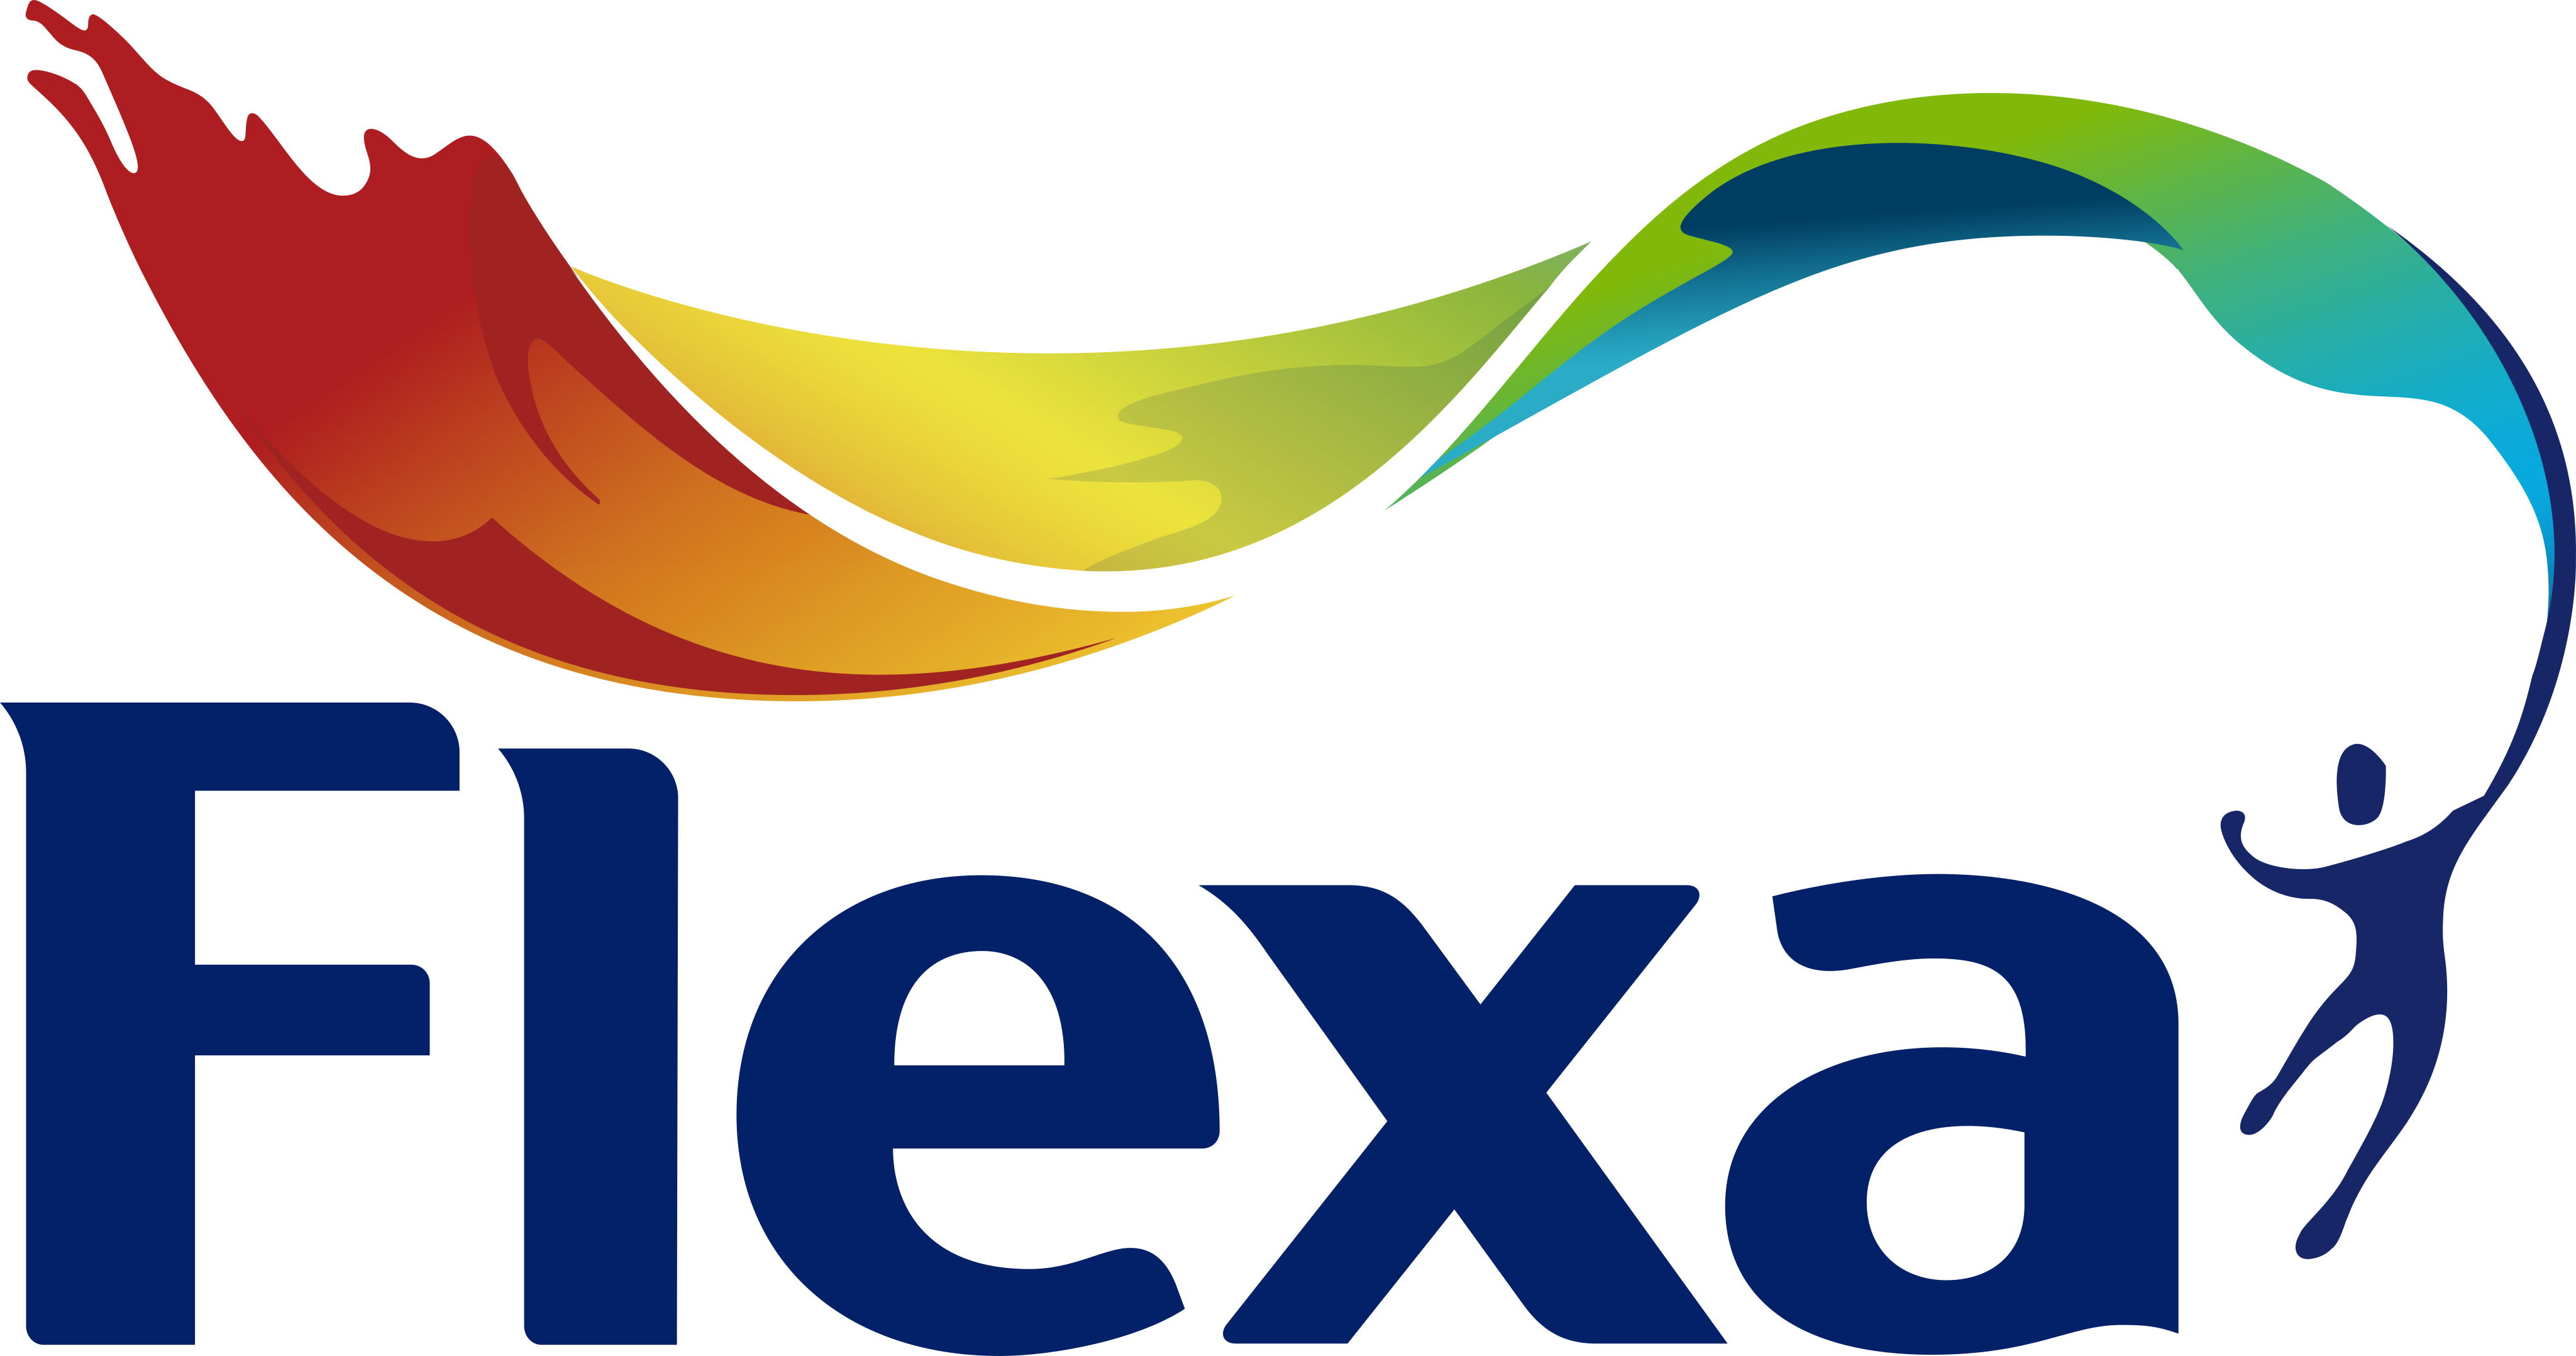 flexa logo - Flexa Paints Logo